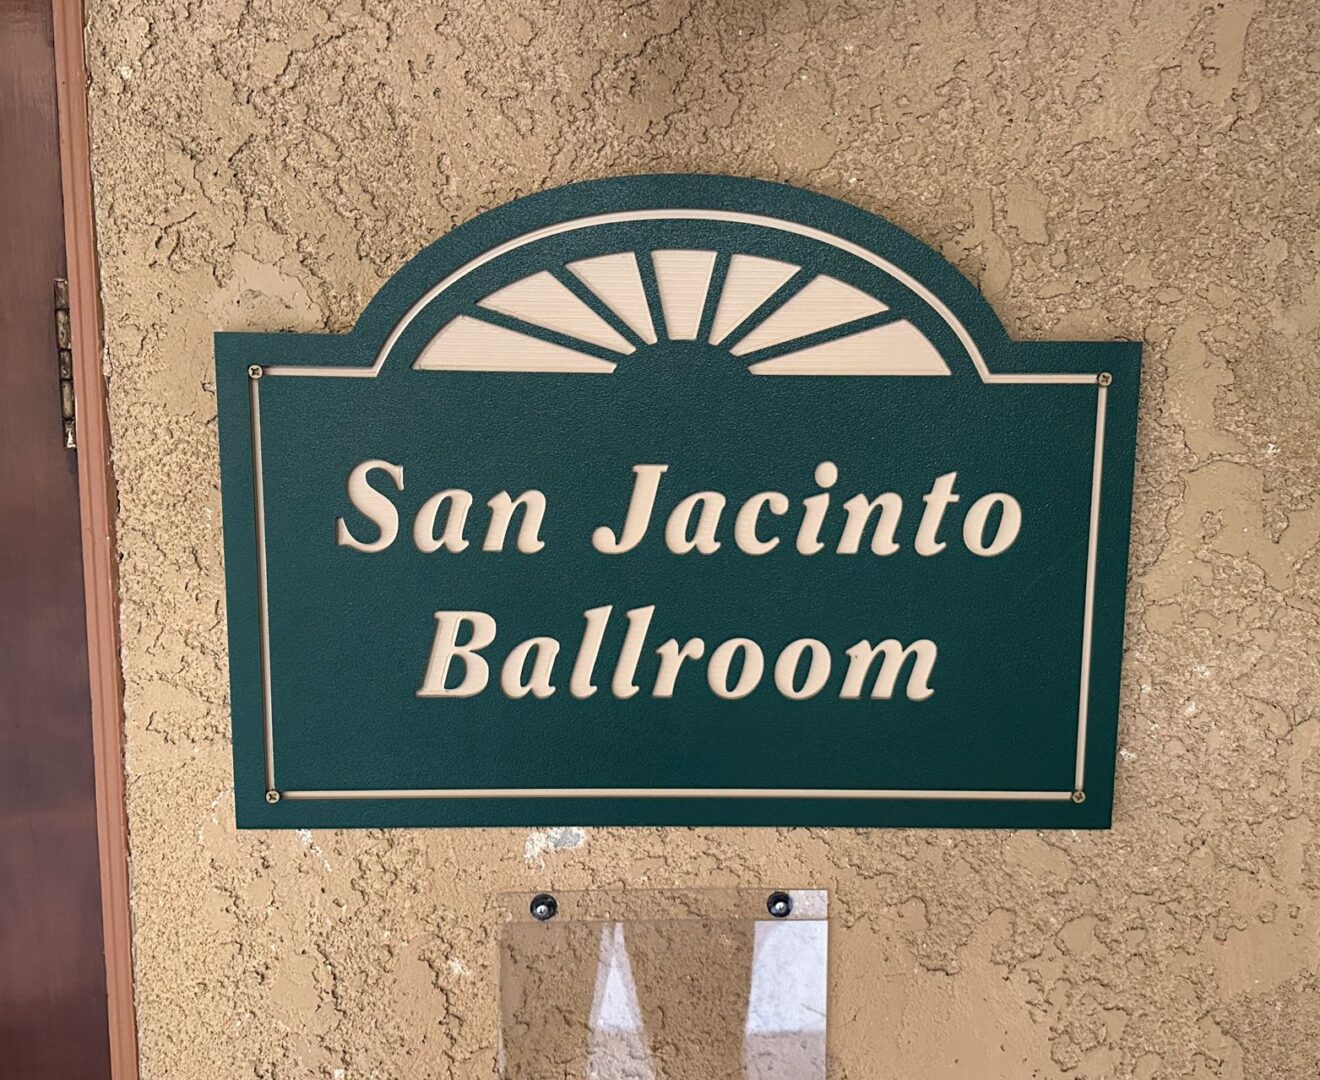 San jacinto ballroom sign.